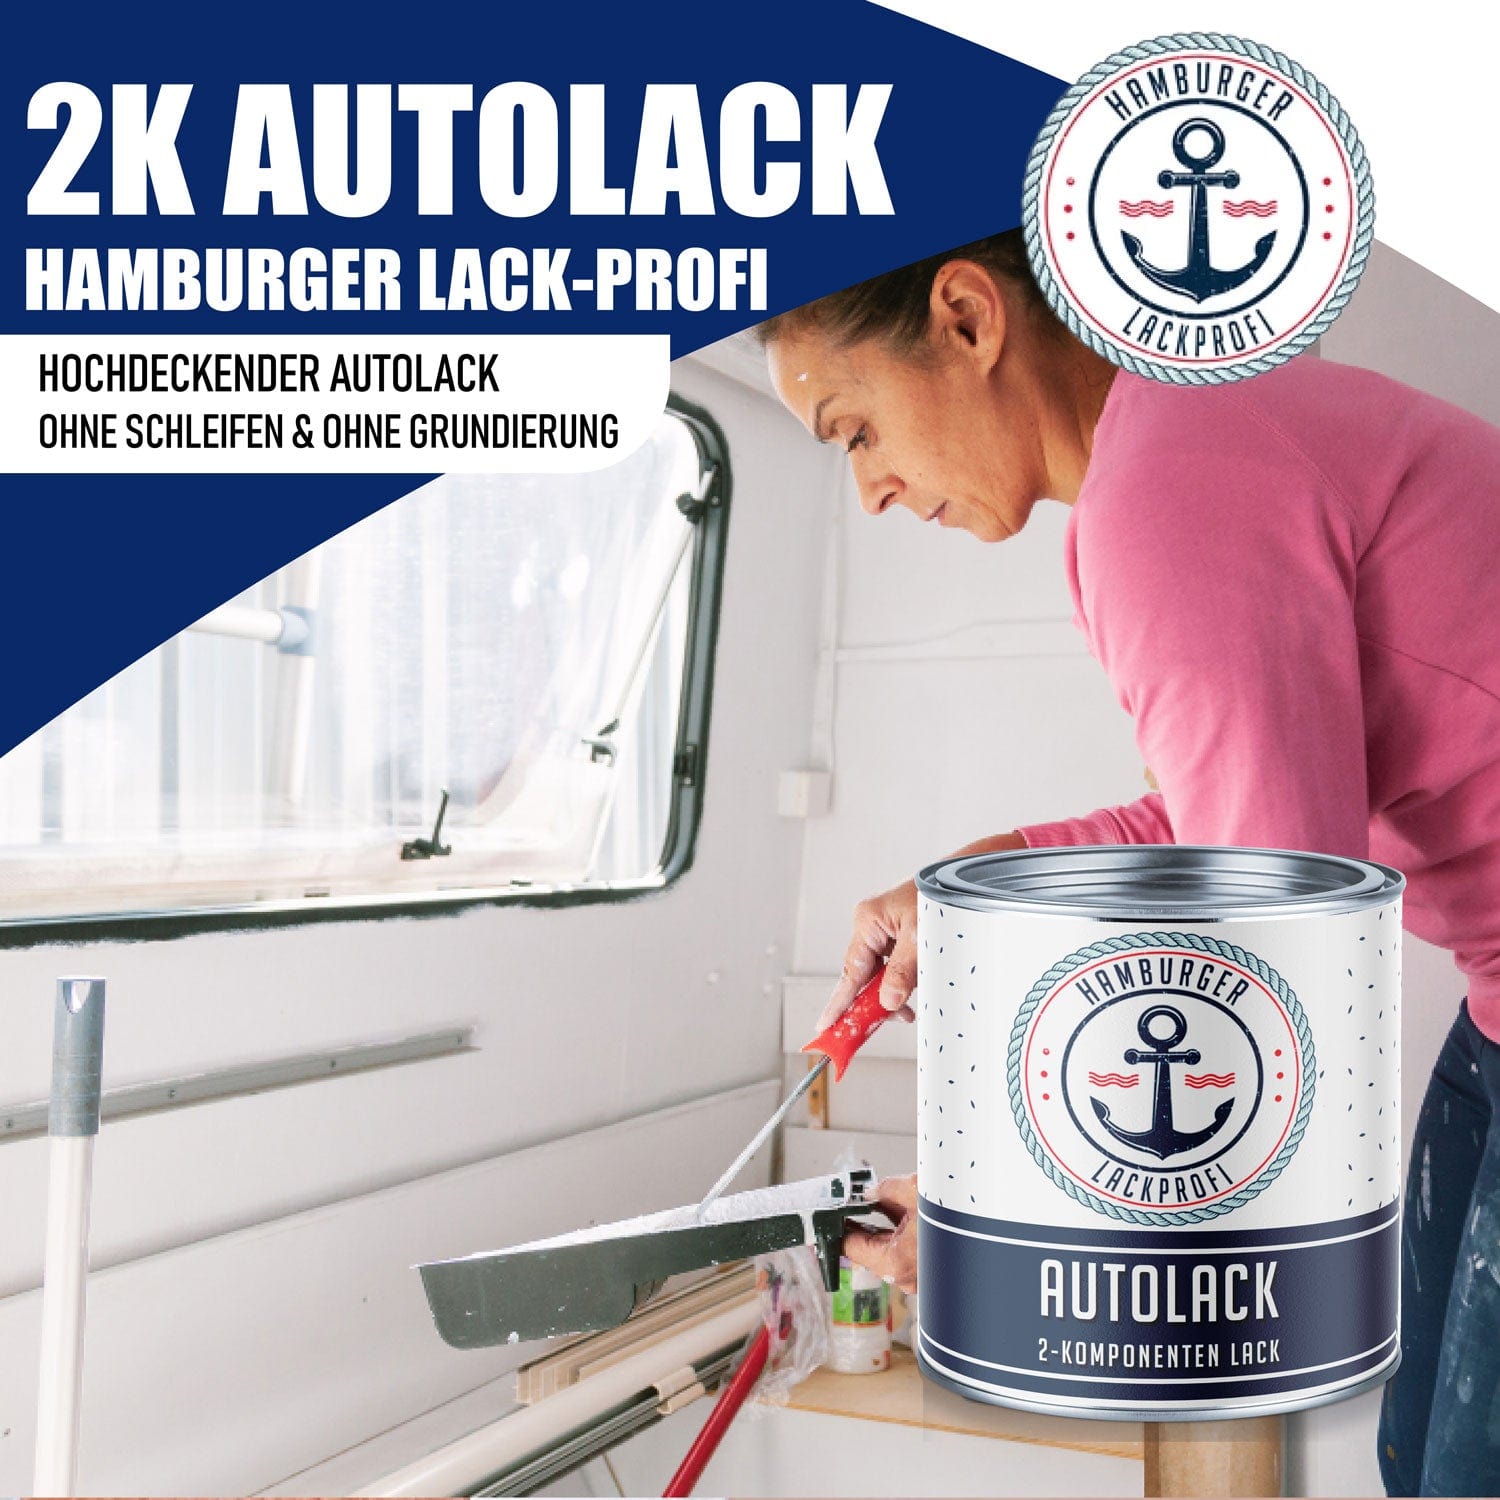 Hamburger Lack-Profi Lacke & Beschichtungen Hamburger Lack-Profi 2K Autolack Lichtblau RAL 5012 - hochdeckend & rostschützend